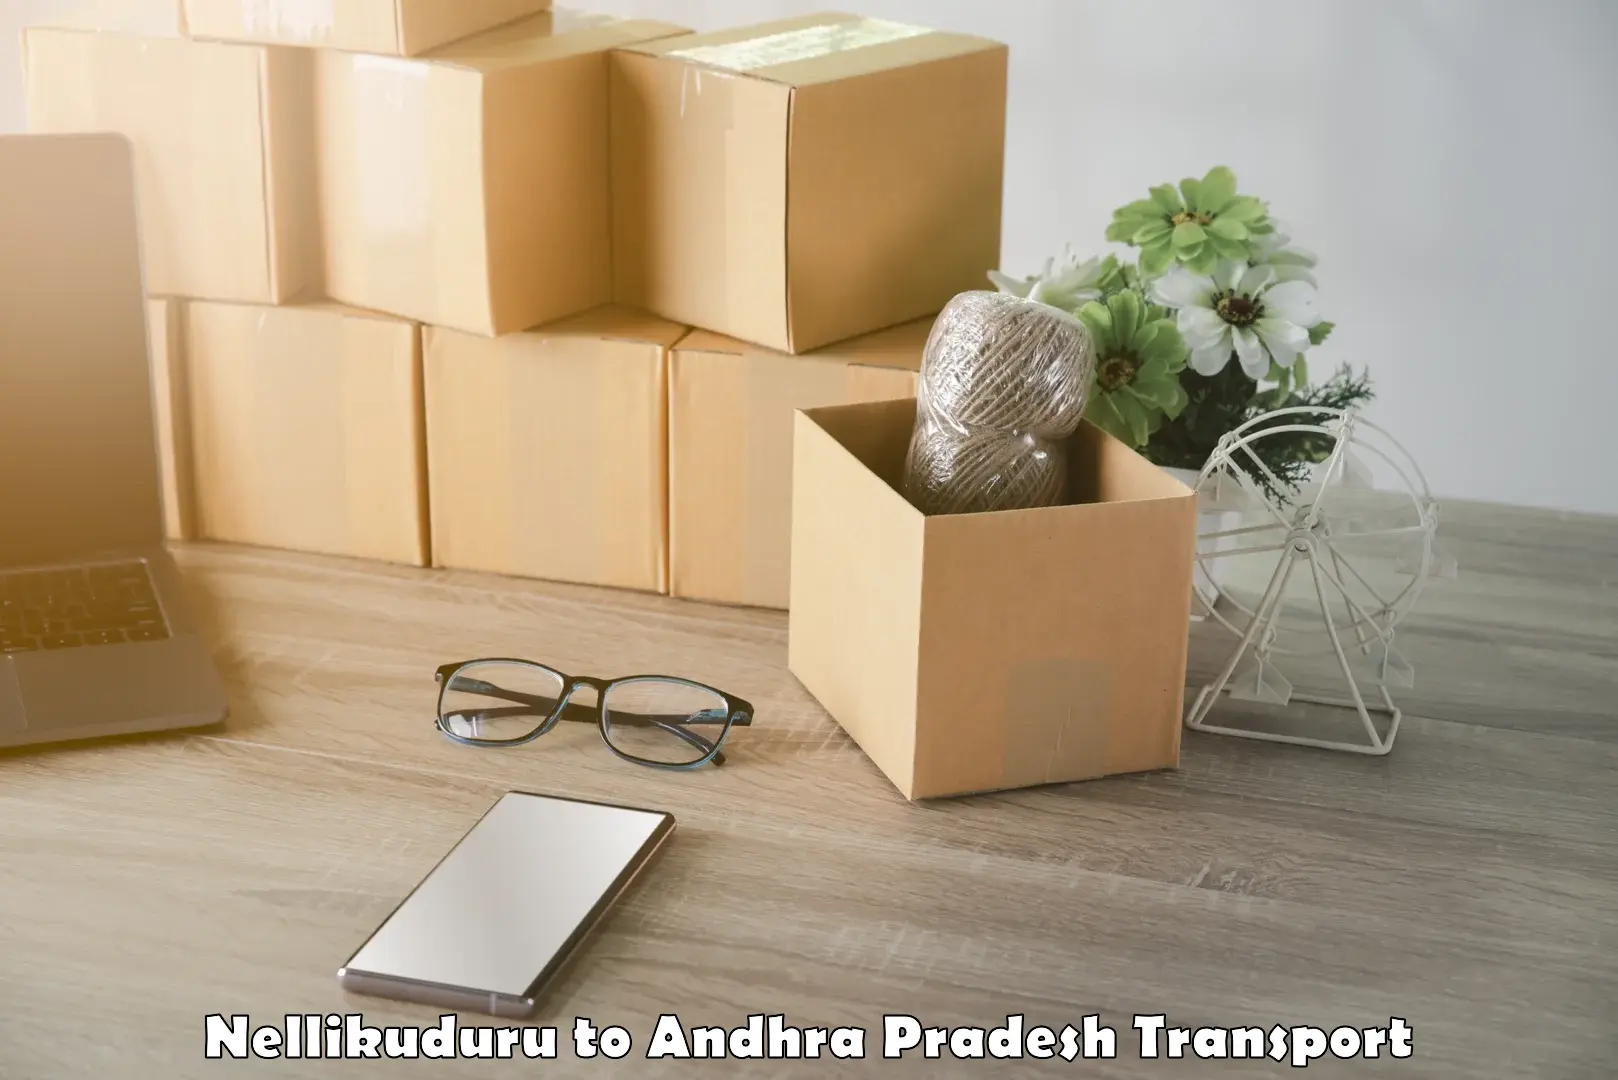 Intercity goods transport Nellikuduru to Tada Tirupati